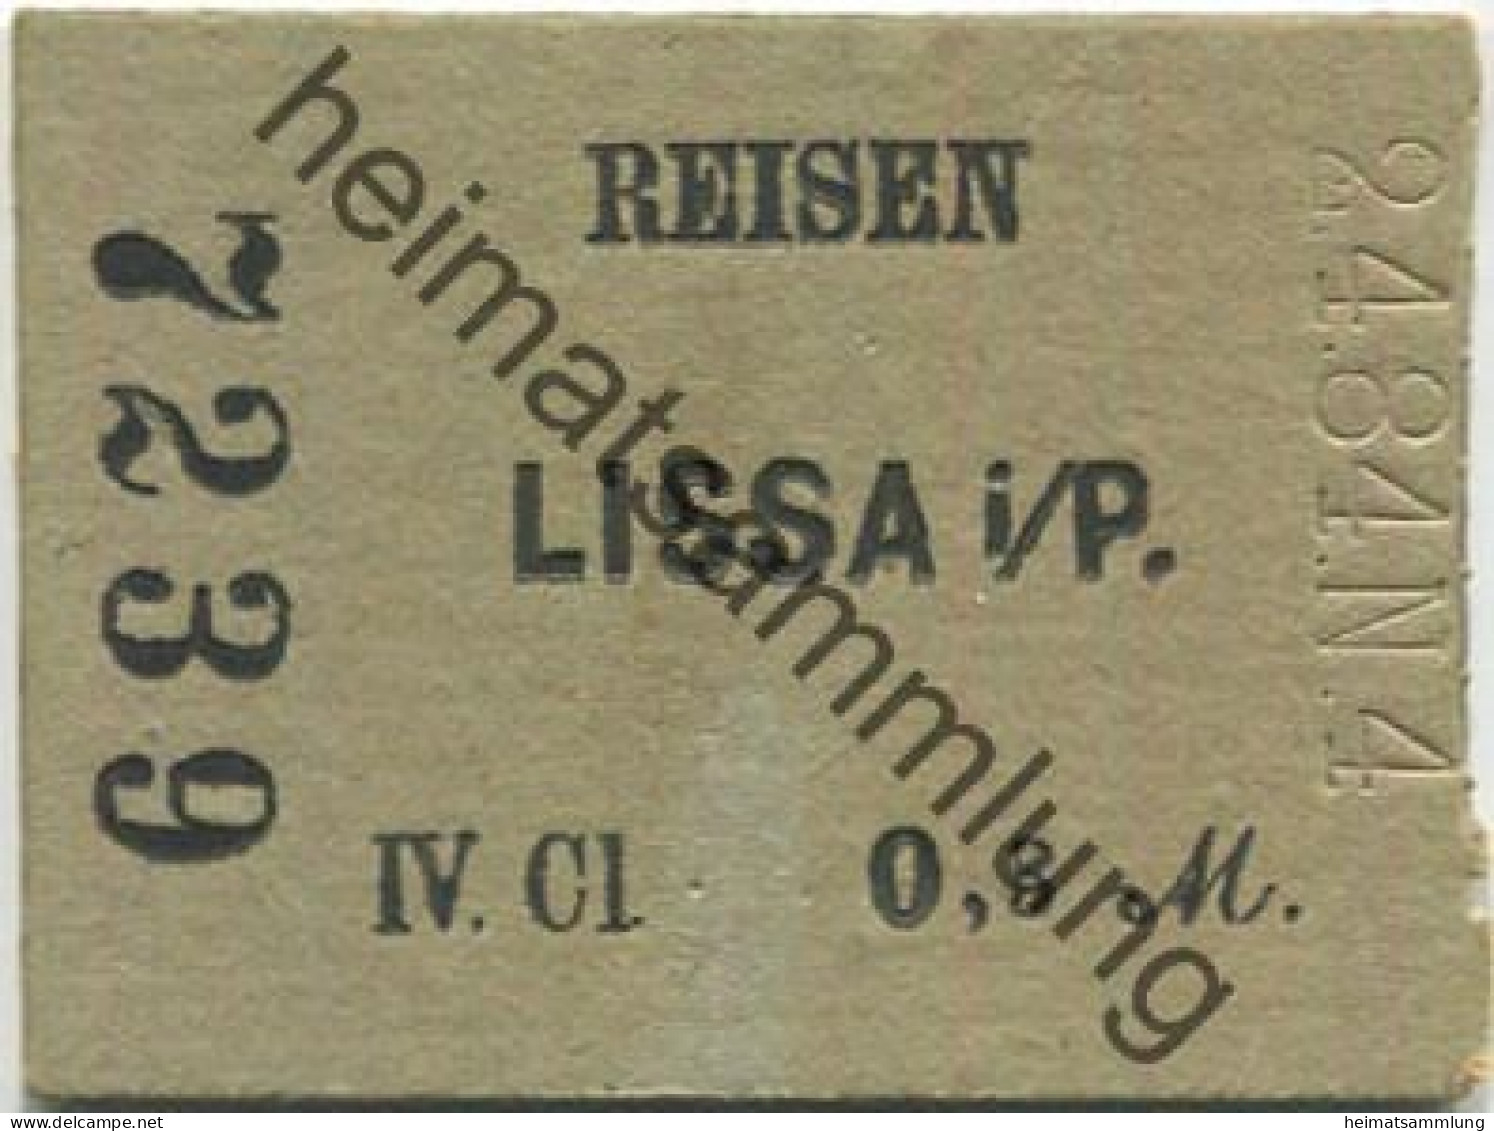 Polen - Reisen - Lissa I. P. - Fahrkarte IV. Cl 0,3 M 2.4.84 - Europe